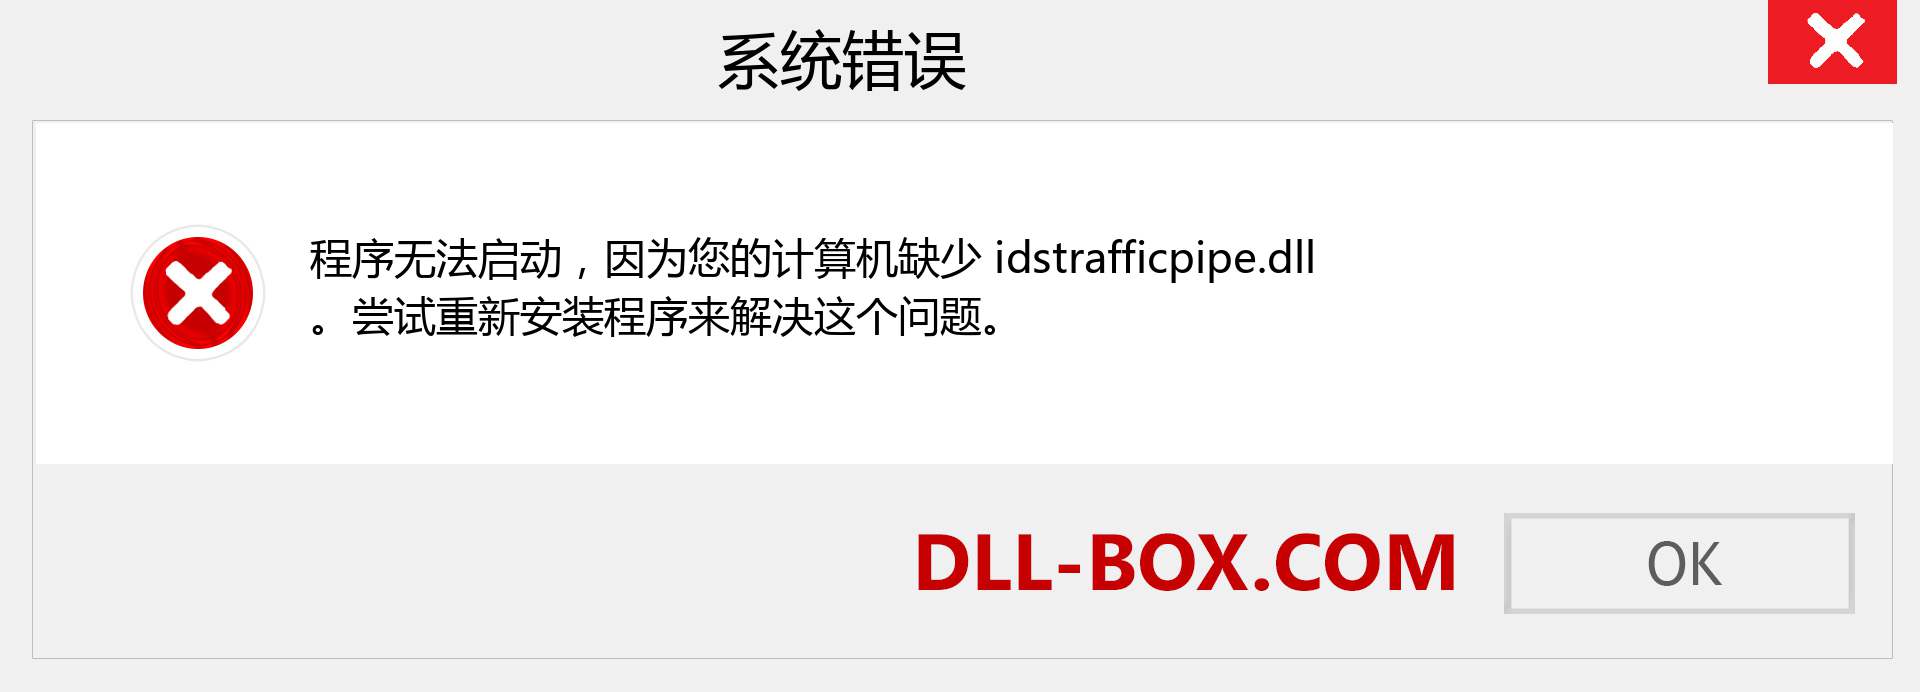 idstrafficpipe.dll 文件丢失？。 适用于 Windows 7、8、10 的下载 - 修复 Windows、照片、图像上的 idstrafficpipe dll 丢失错误